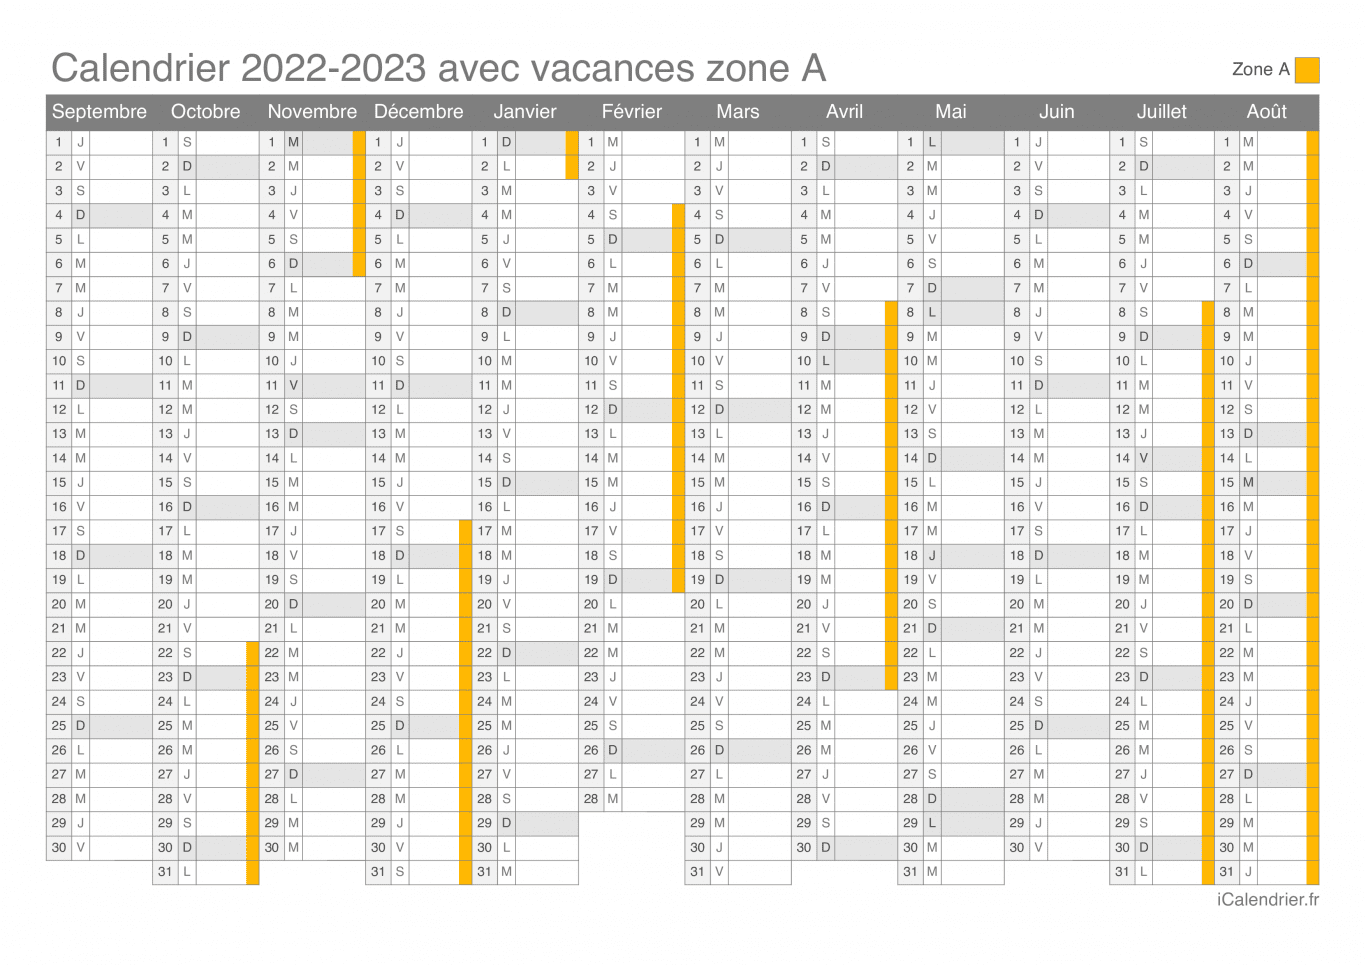 Calendrier des vacances scolaires 2022-2023 de la zone A